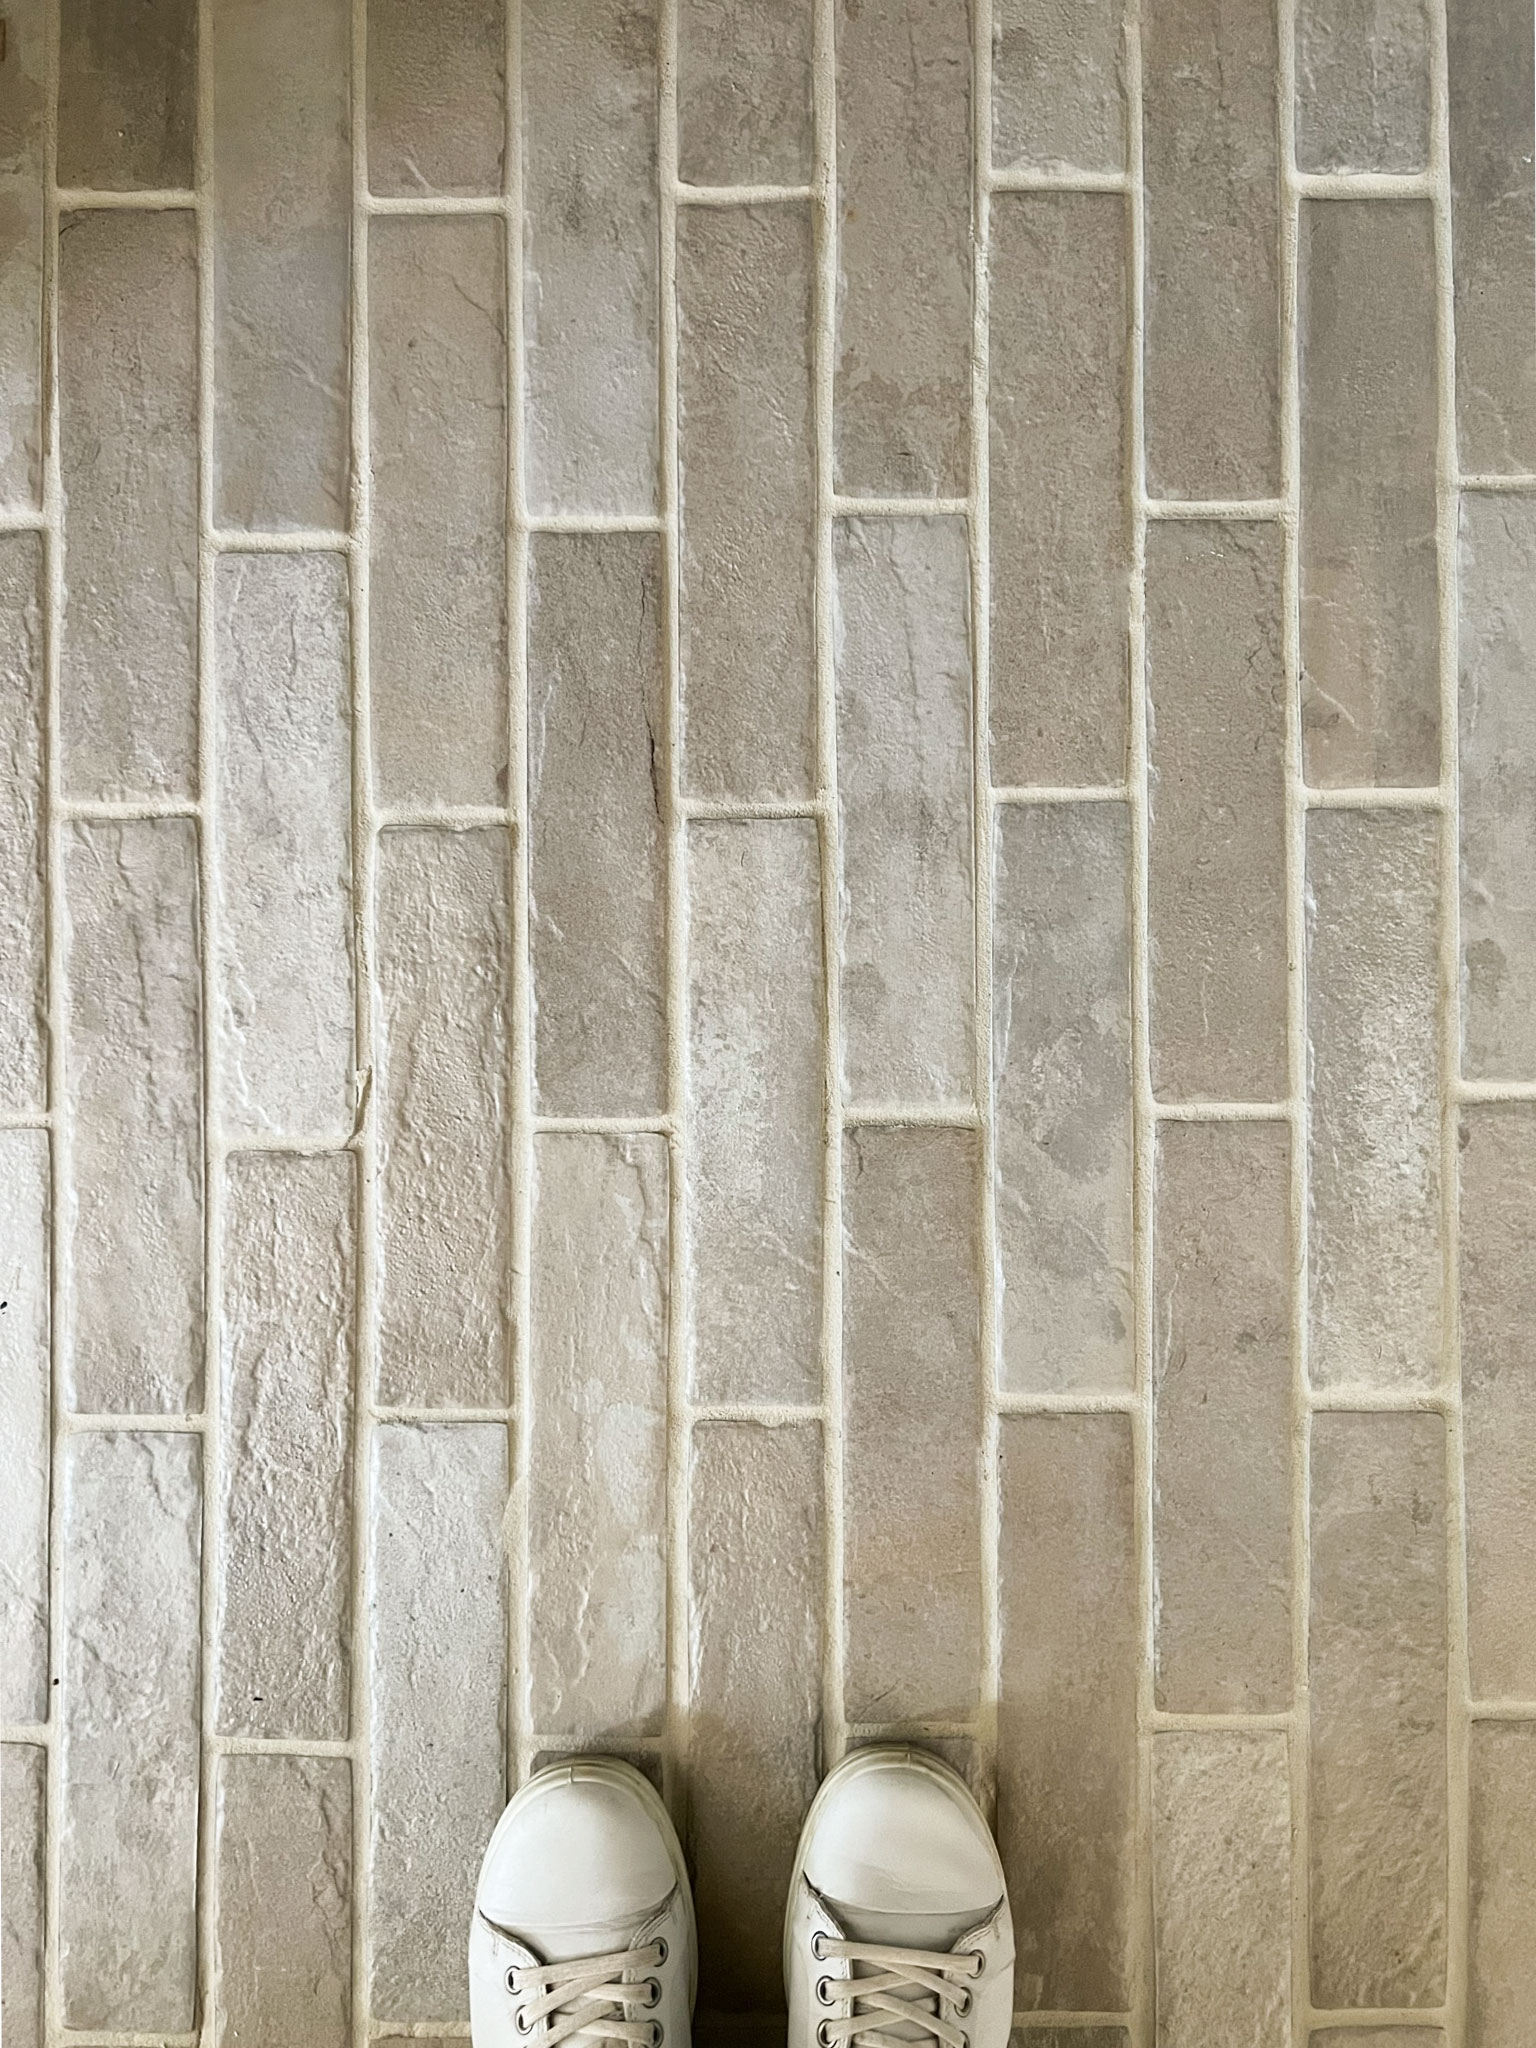 beige brick floors looking down